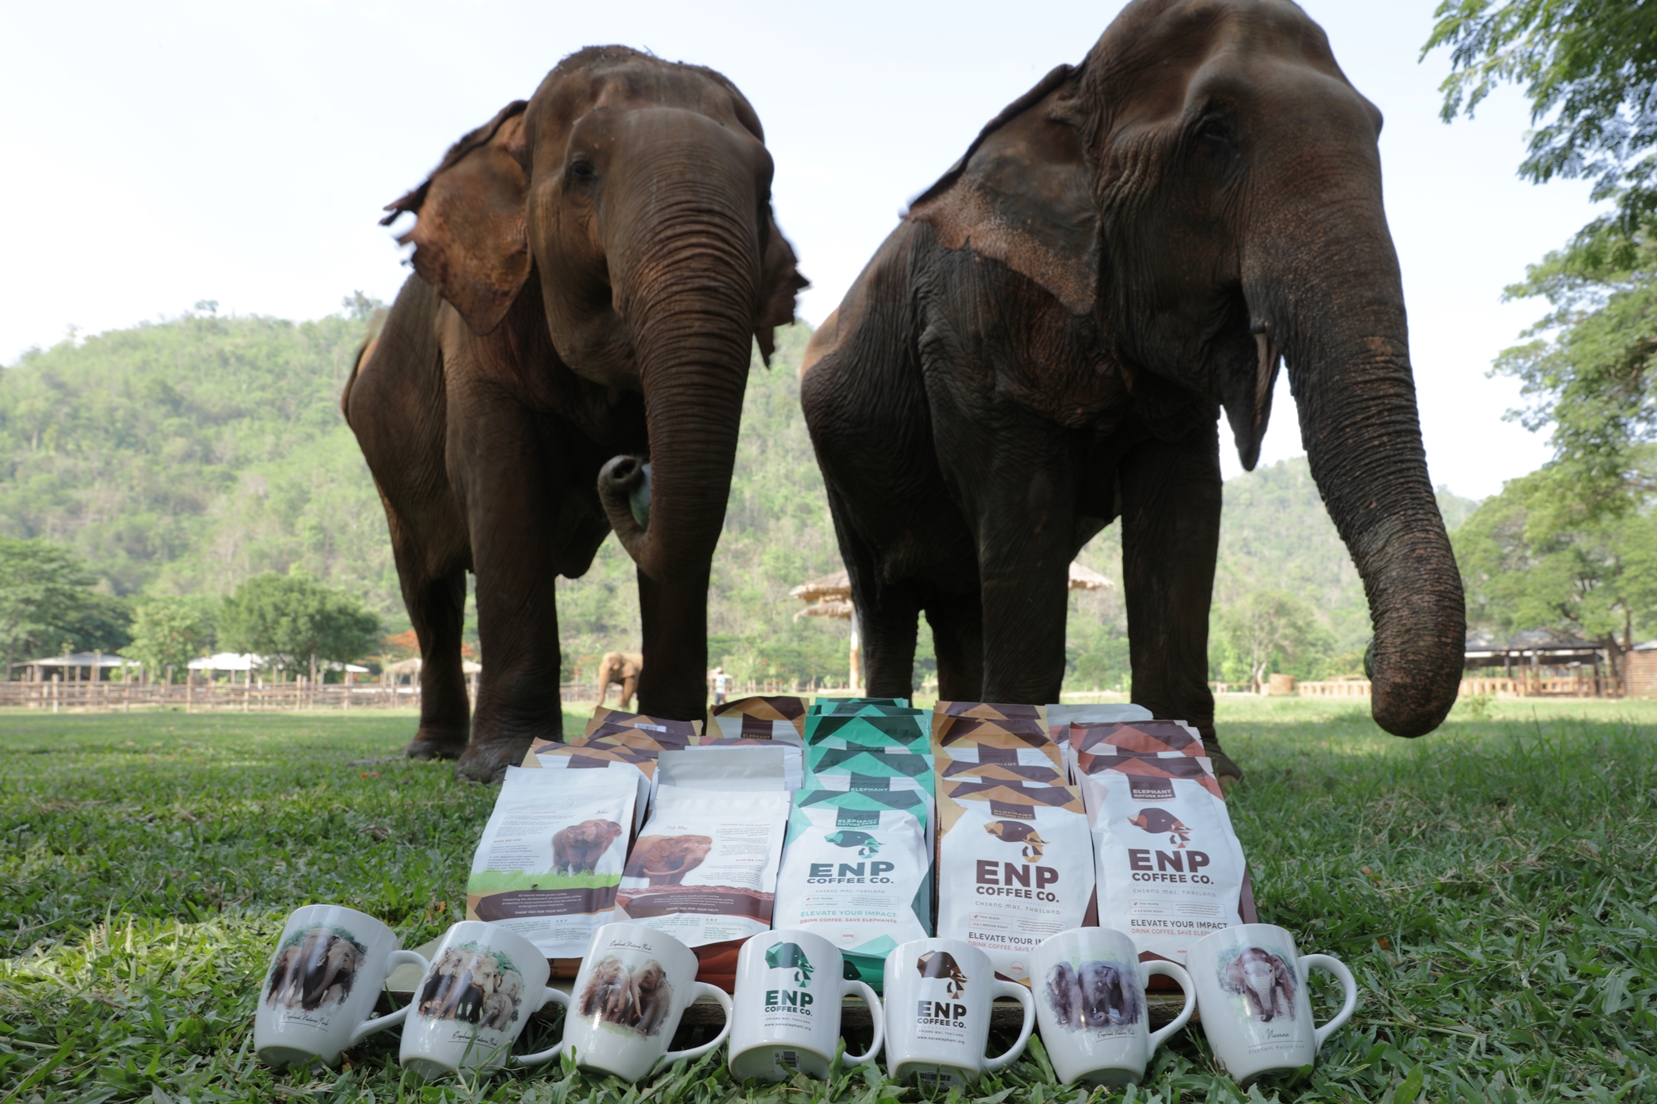 ลาซาด้ากับอีกก้าวของการใช้เทคโนโลยีเพื่อชุมชน จัด Virtual Tour ศูนย์อนุรักษ์ช้าง ช่วยเหลือช้างไทยและชุมชนผู้ปลูกกาแฟ